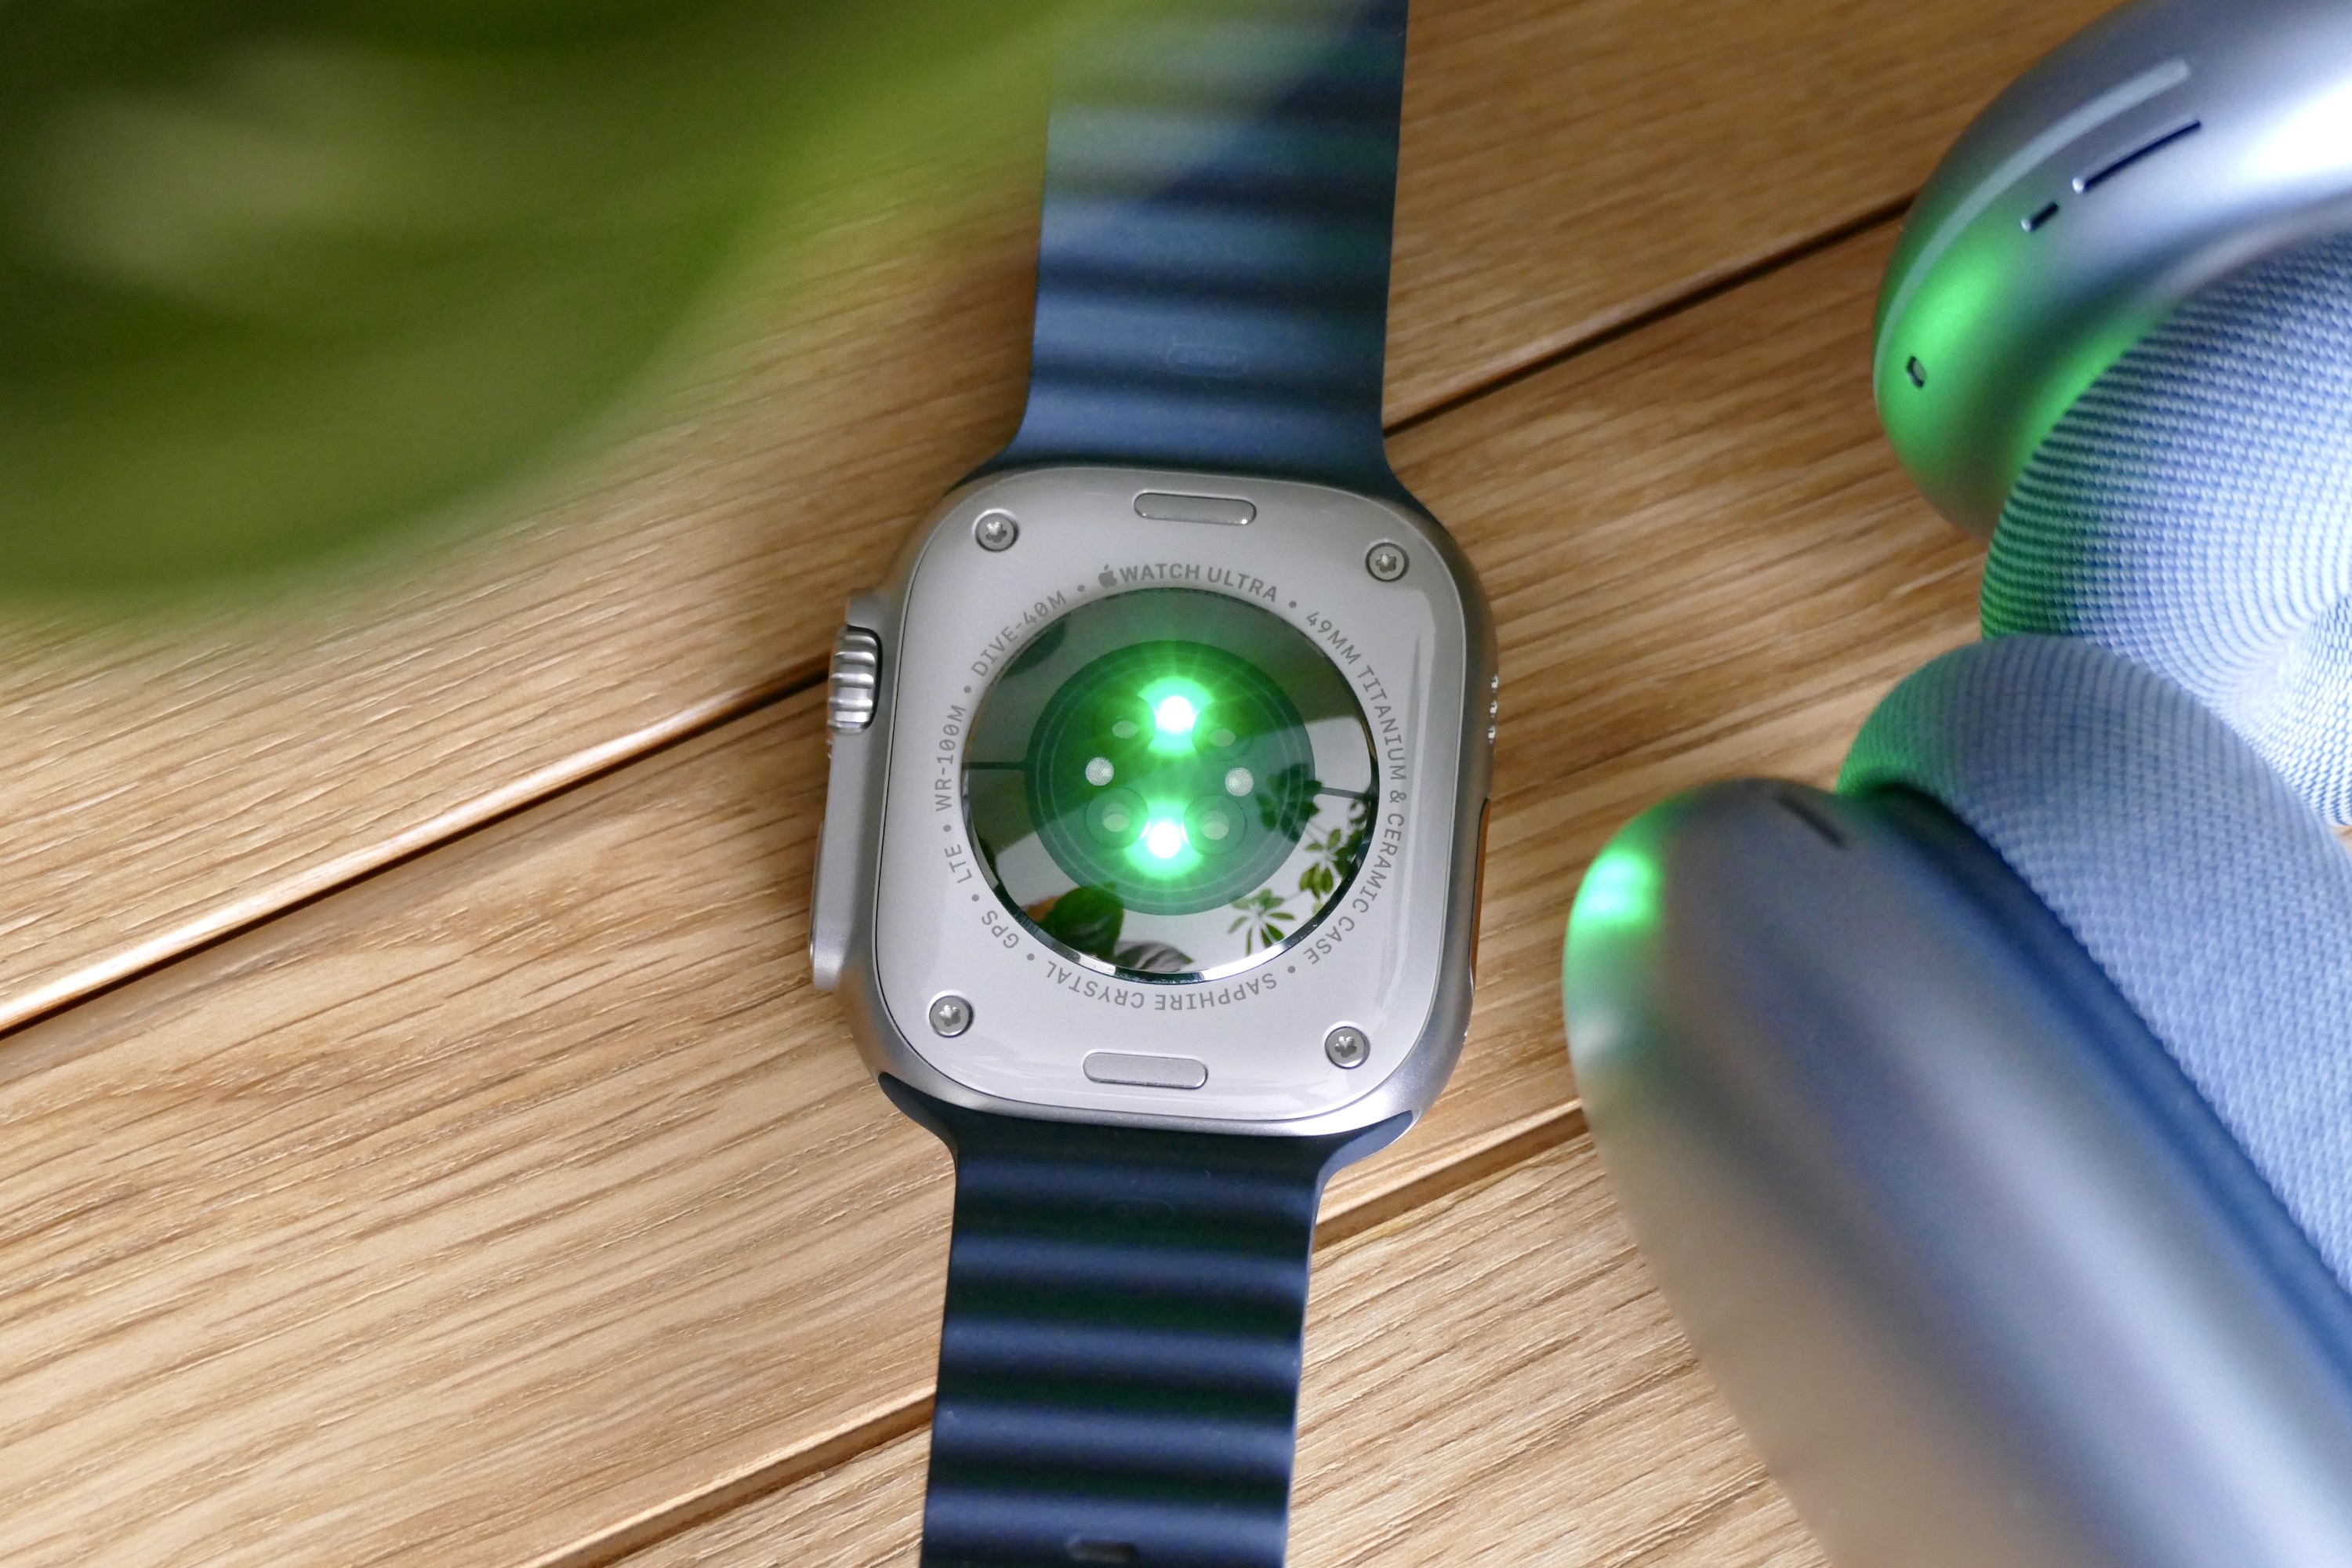 Sensore di battito cardiaco attivo dell'Apple Watch Ultra.